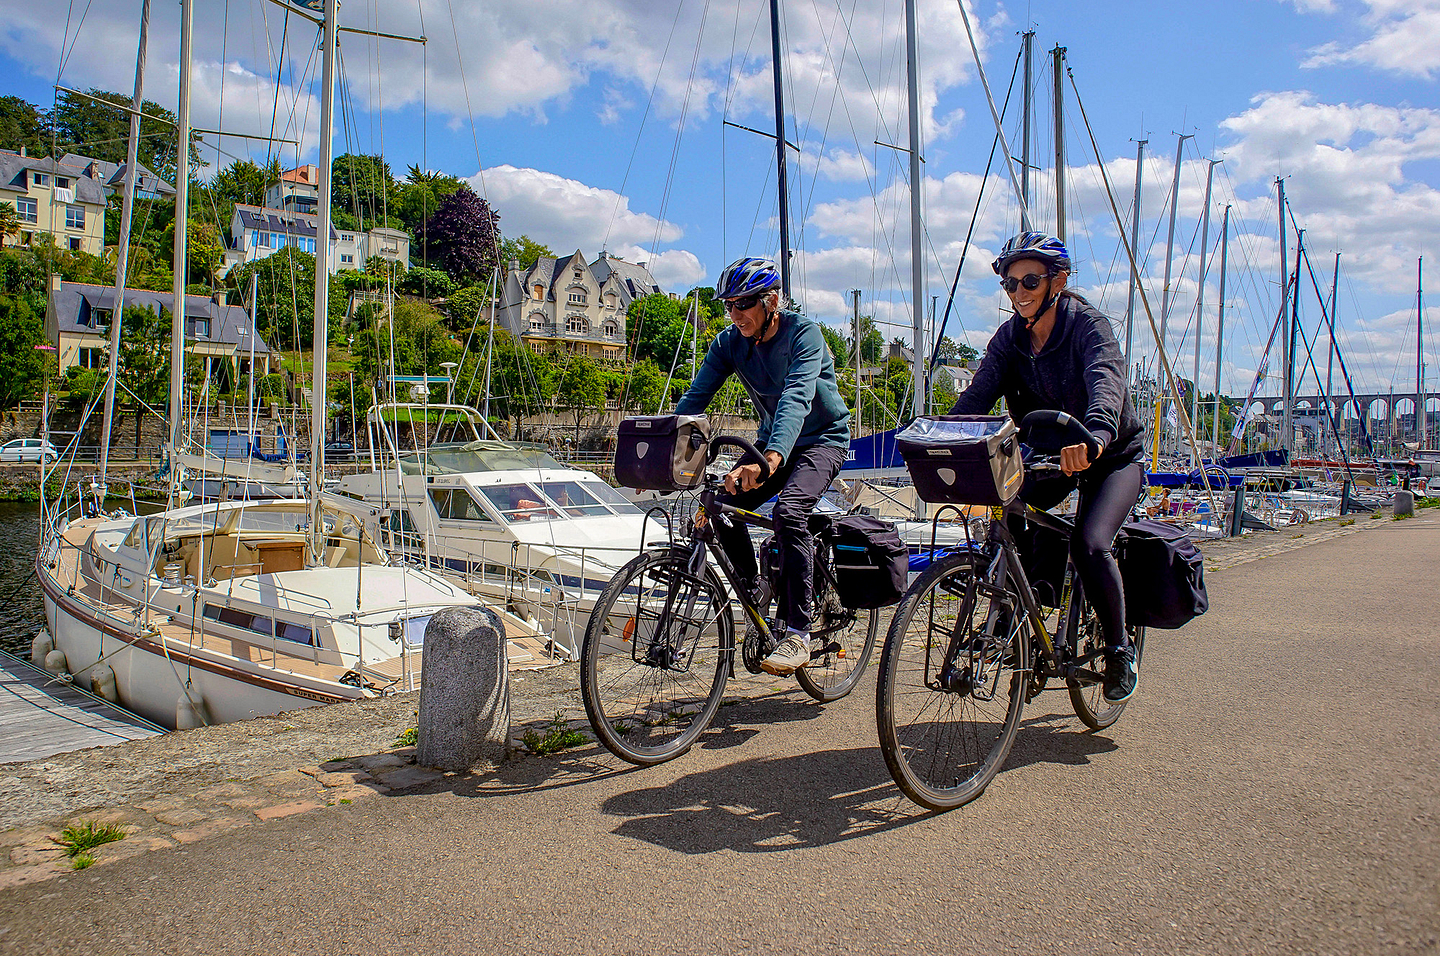 Balade à vélo sur le port de Morlaix ©STAPF Aurélie